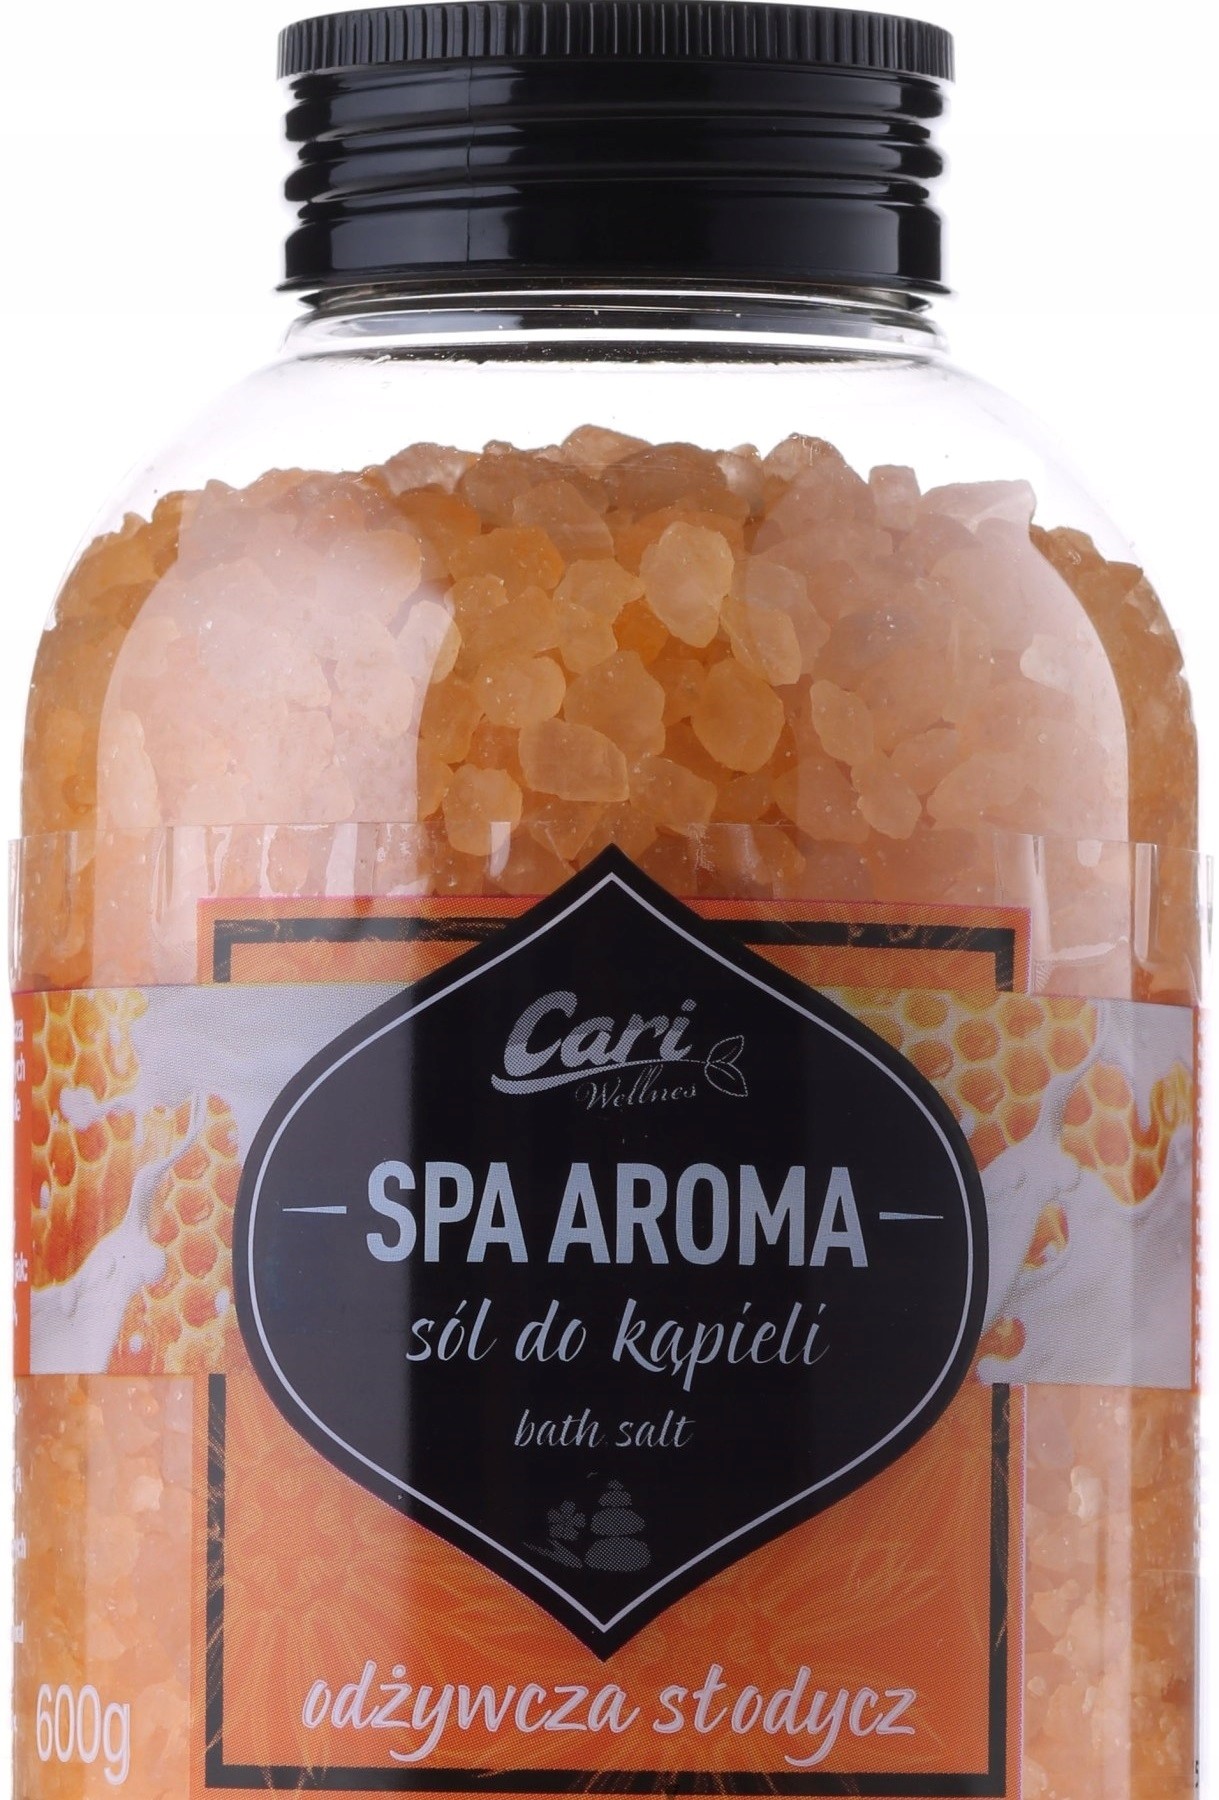 Cari Spa Aroma Sól do kąpieli Odżywcza słodycz 600